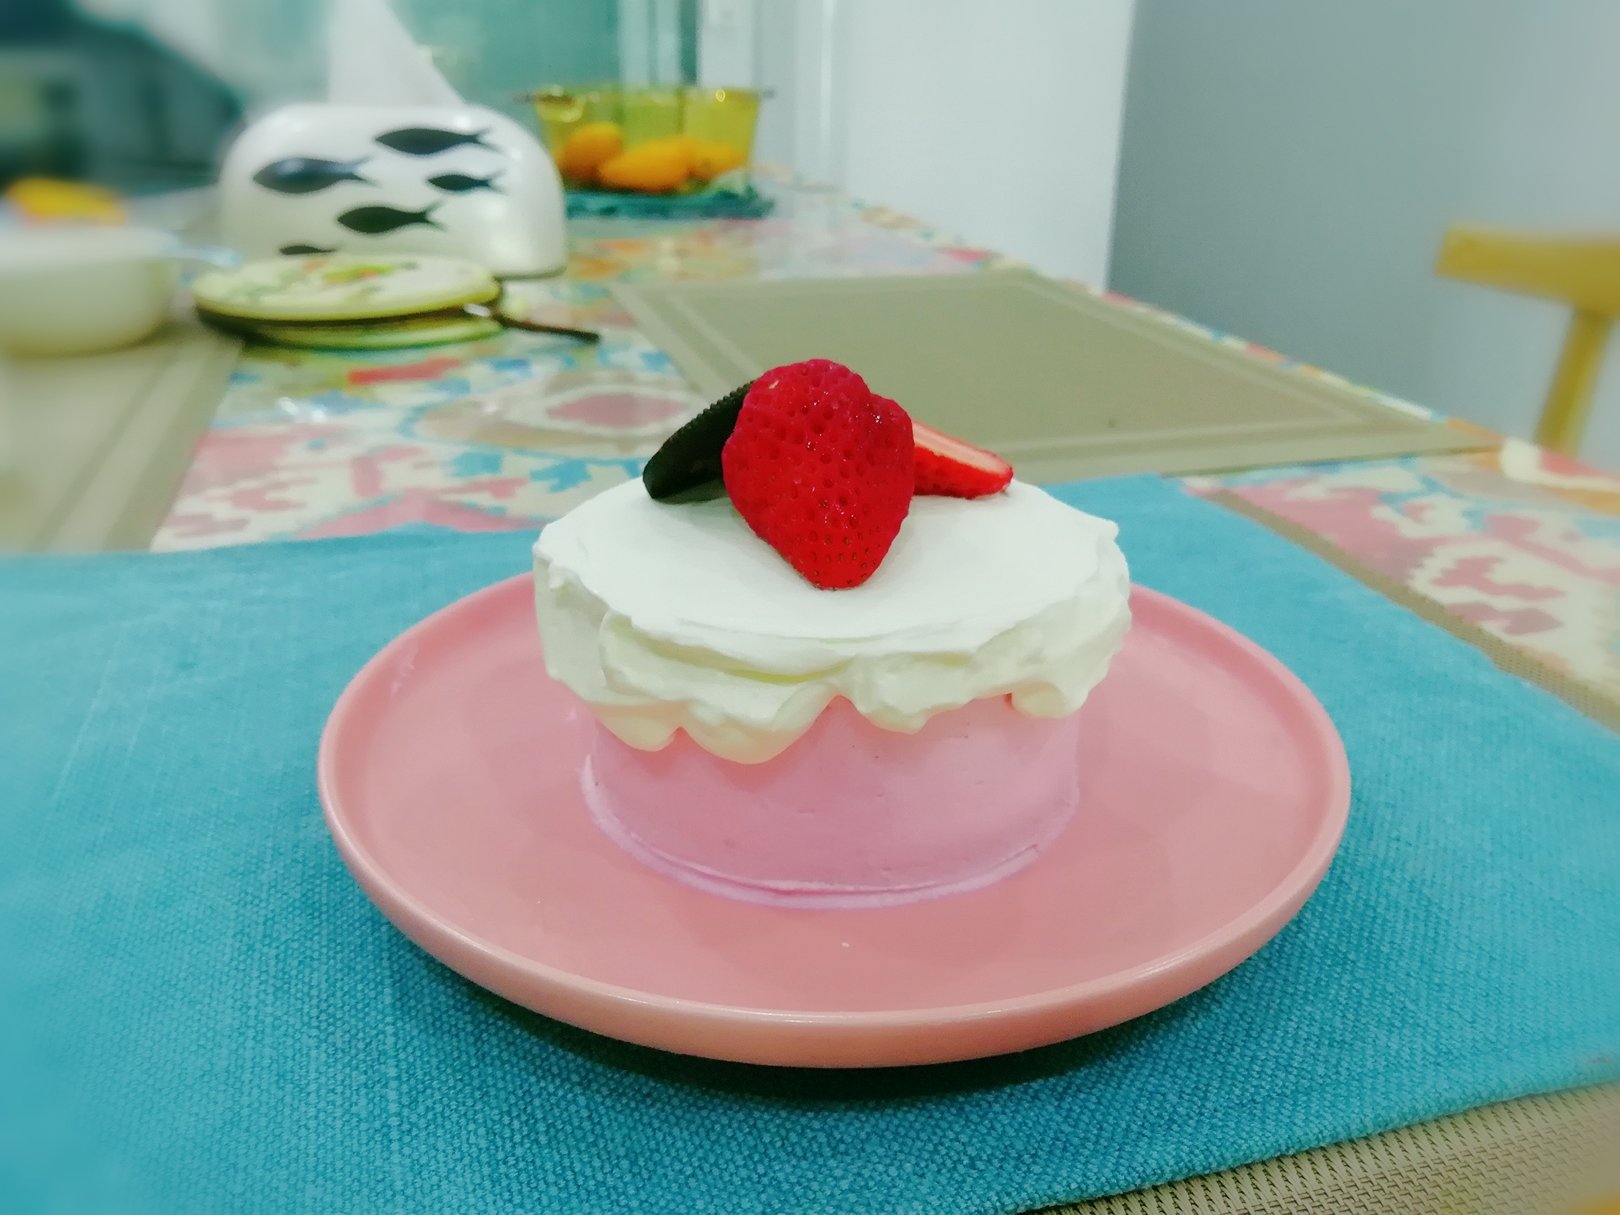 【视频】树莓奶油 滴落蛋糕